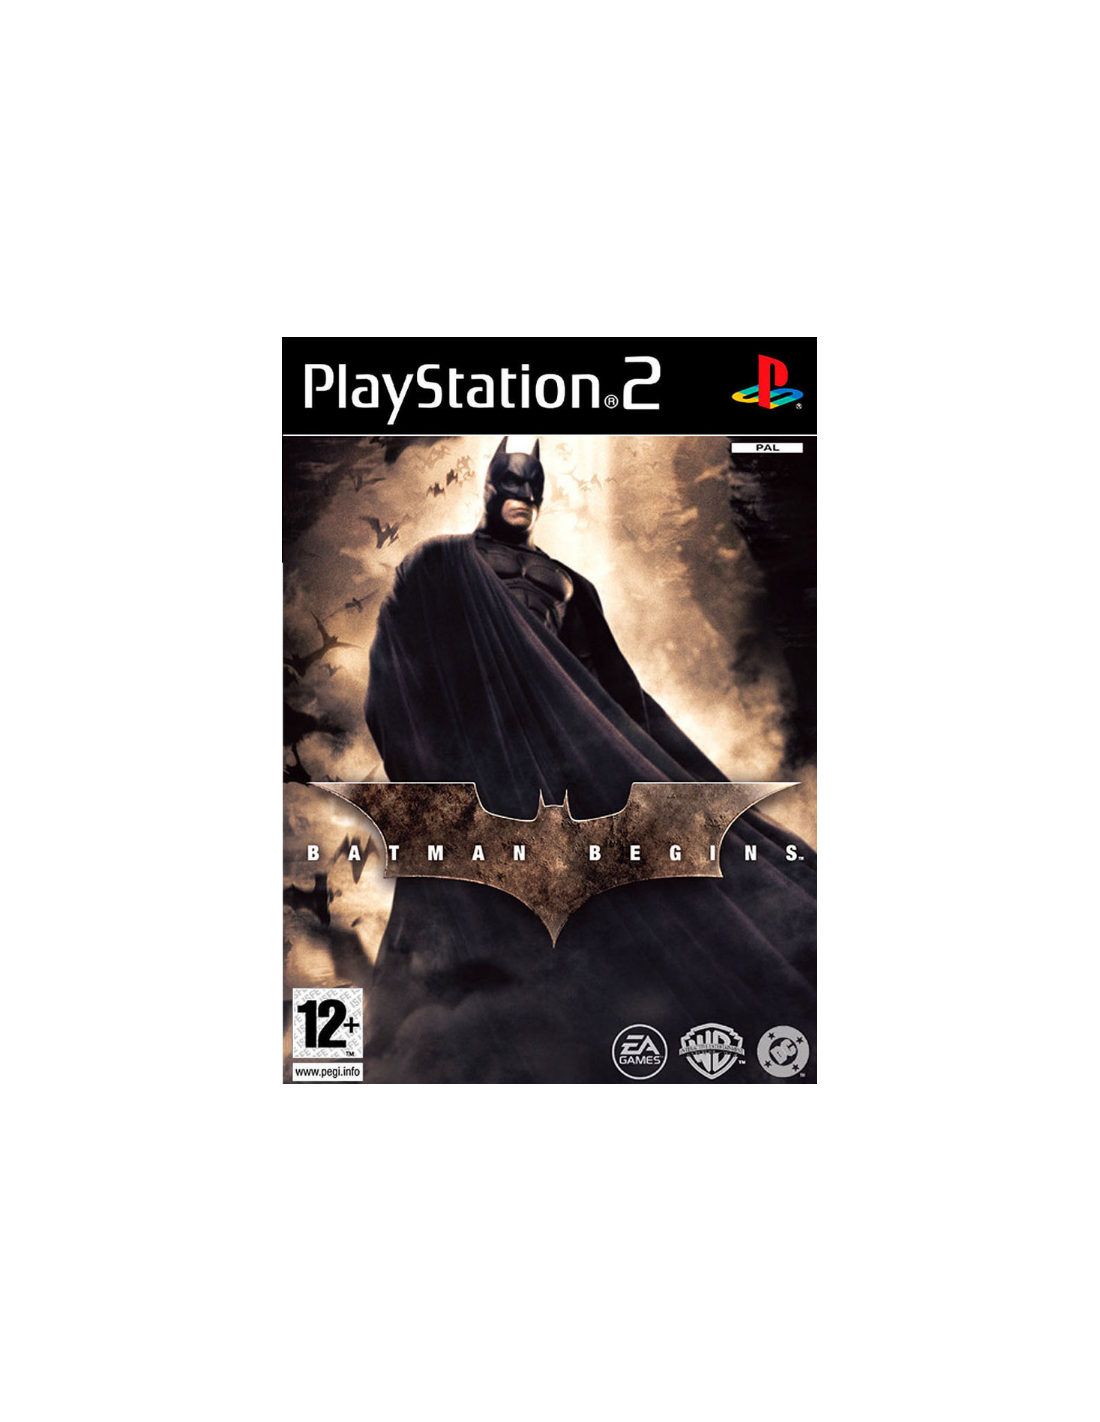 Batman begins psp download cso